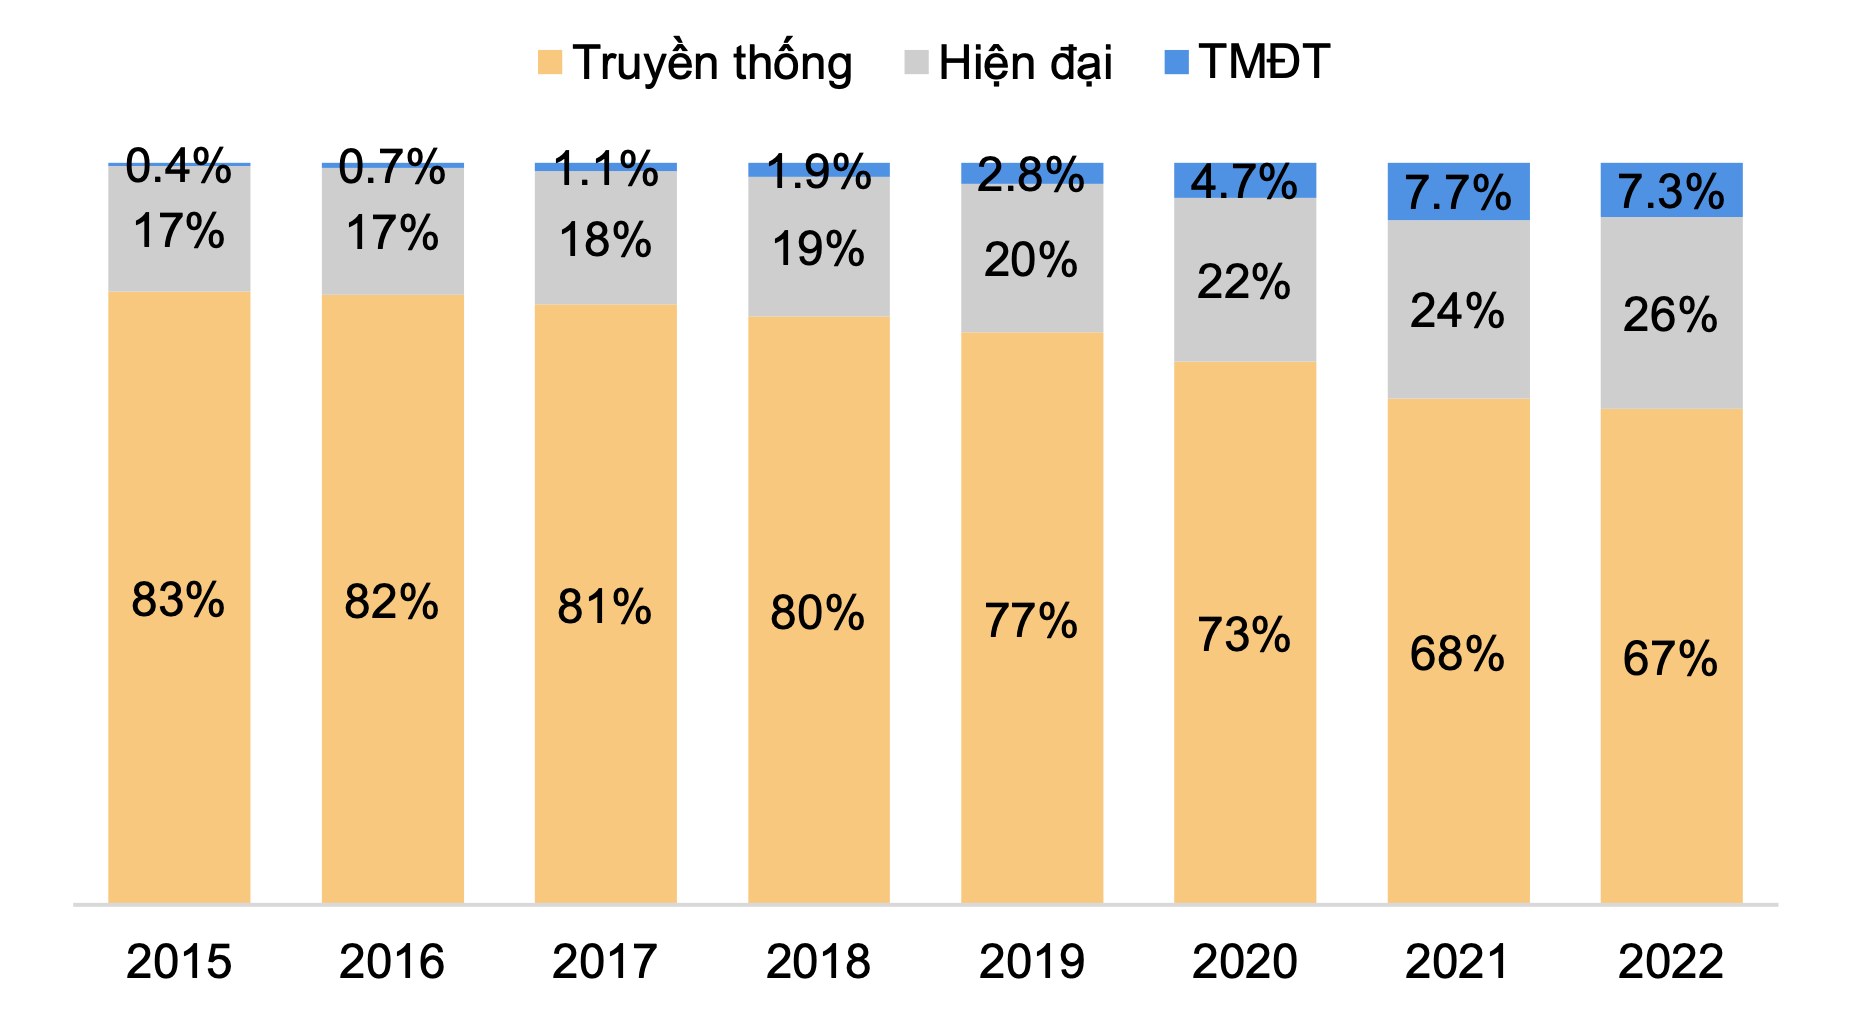 Tỷ trọng doanh thu các kênh bán lẻ giai đoạn 2015-2022 (Nguồn: Kantar, Ecommerce DB, Statista, PSI tổng hợp)